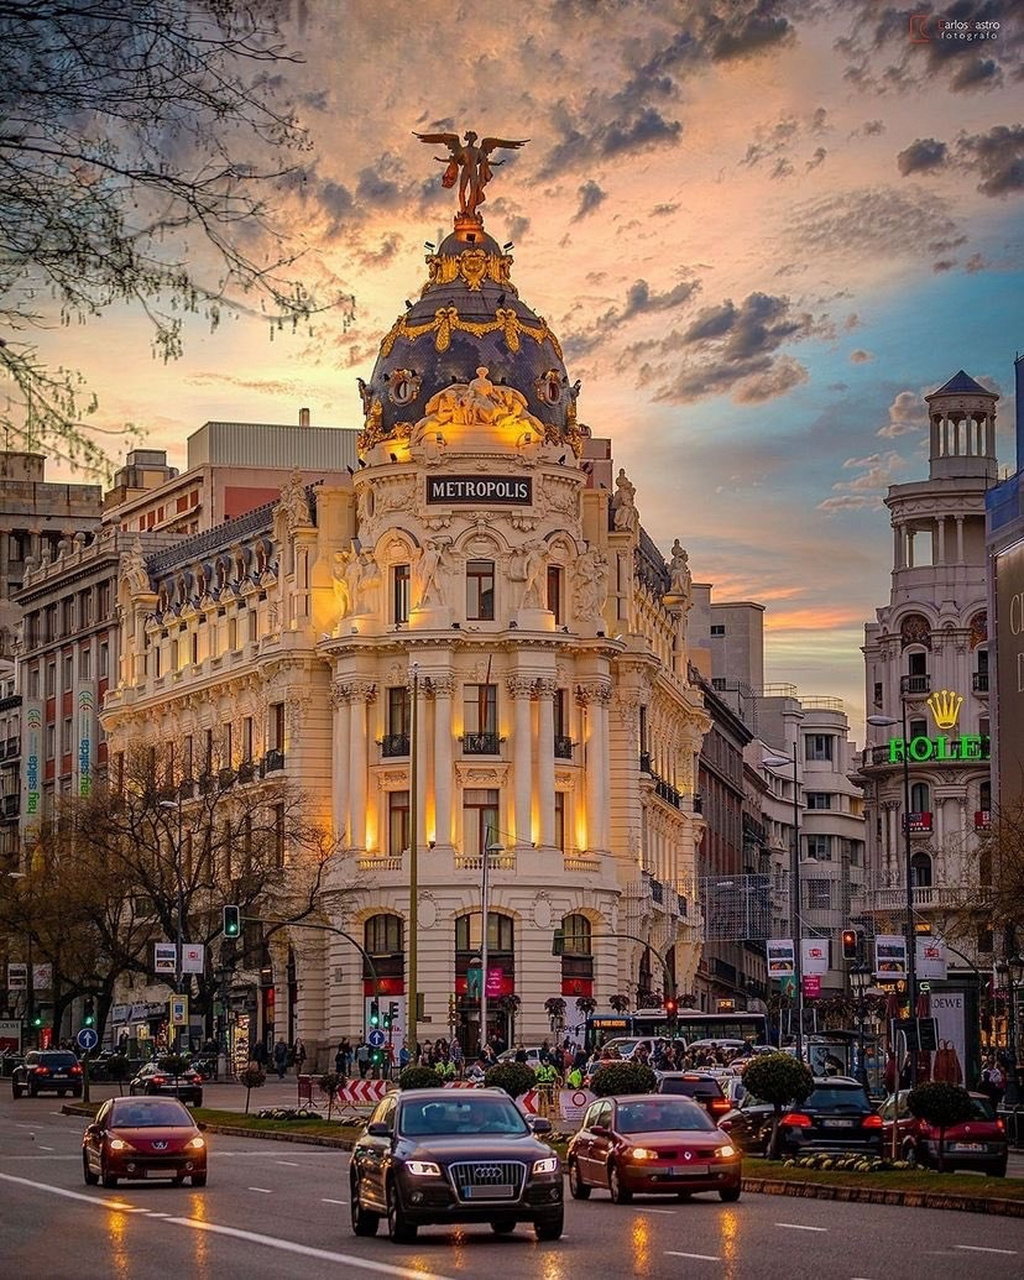 西班牙,metropolis是现代马德里建筑的标志